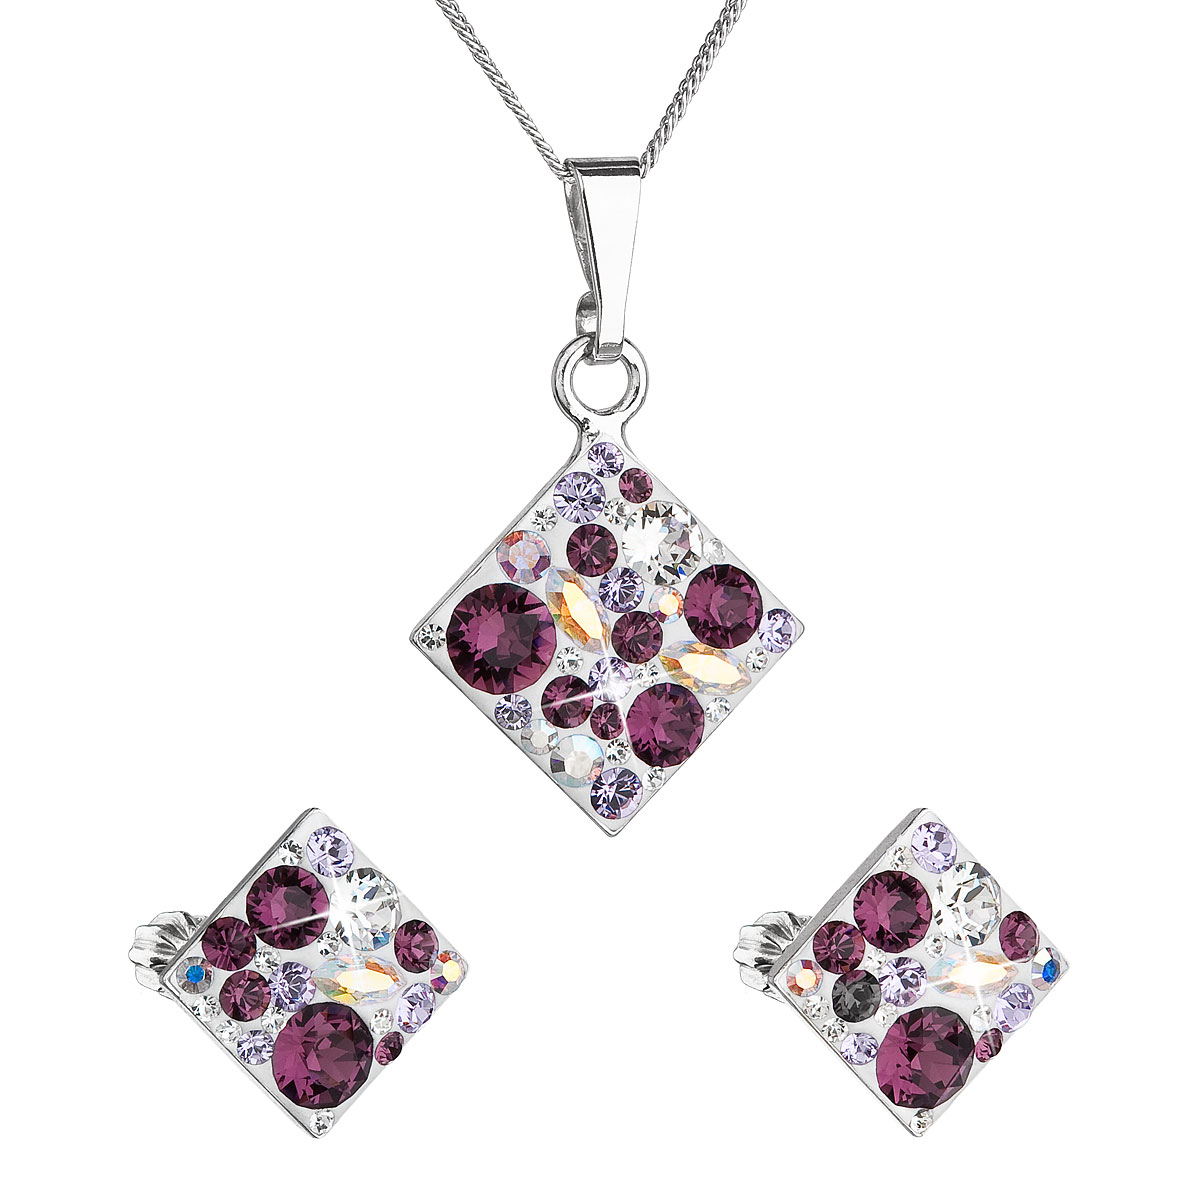 Evolution Group Sada šperků s krystaly Swarovski náušnice, řetízek a přívěsek fialový kosočtverec 39126.3 amethyst